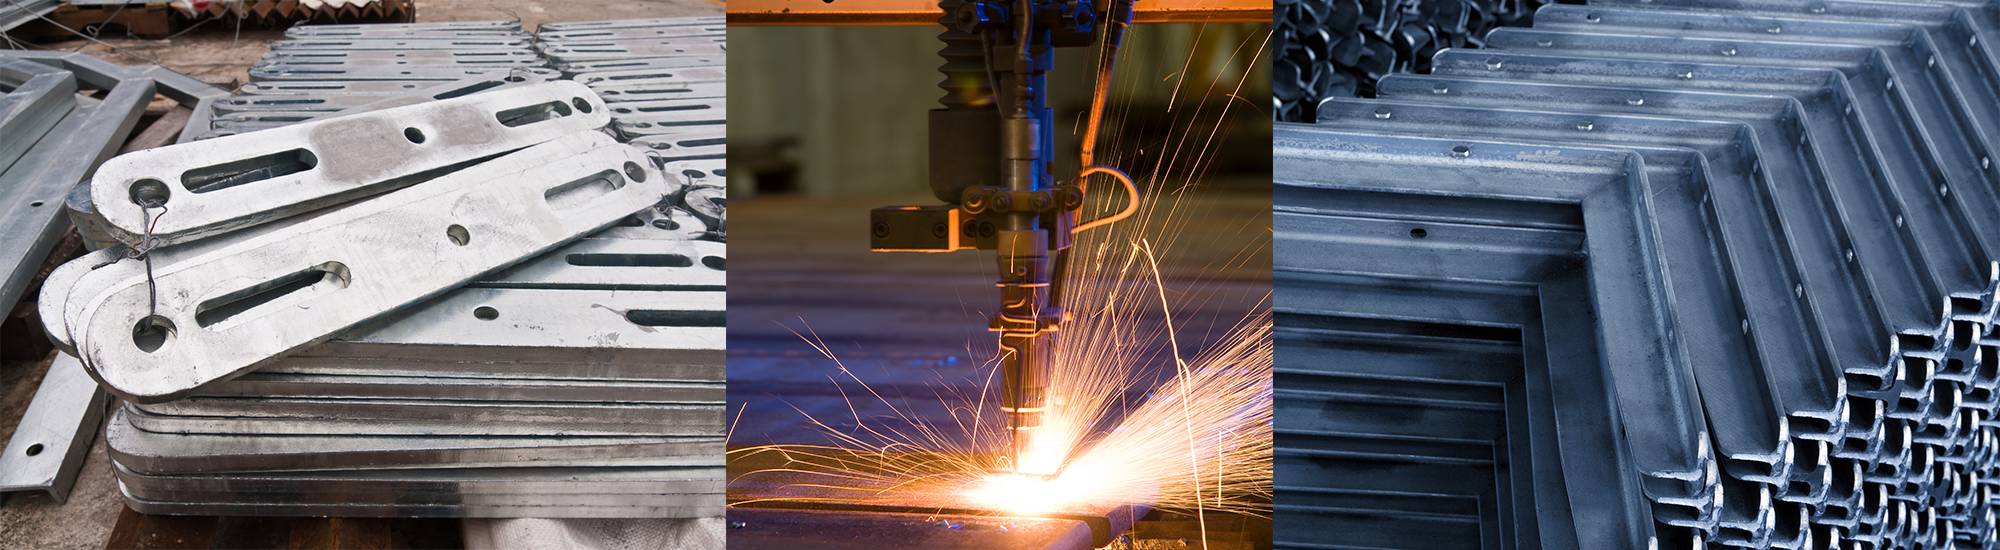 custom metal fabrication Denver Cadet Steel Denver